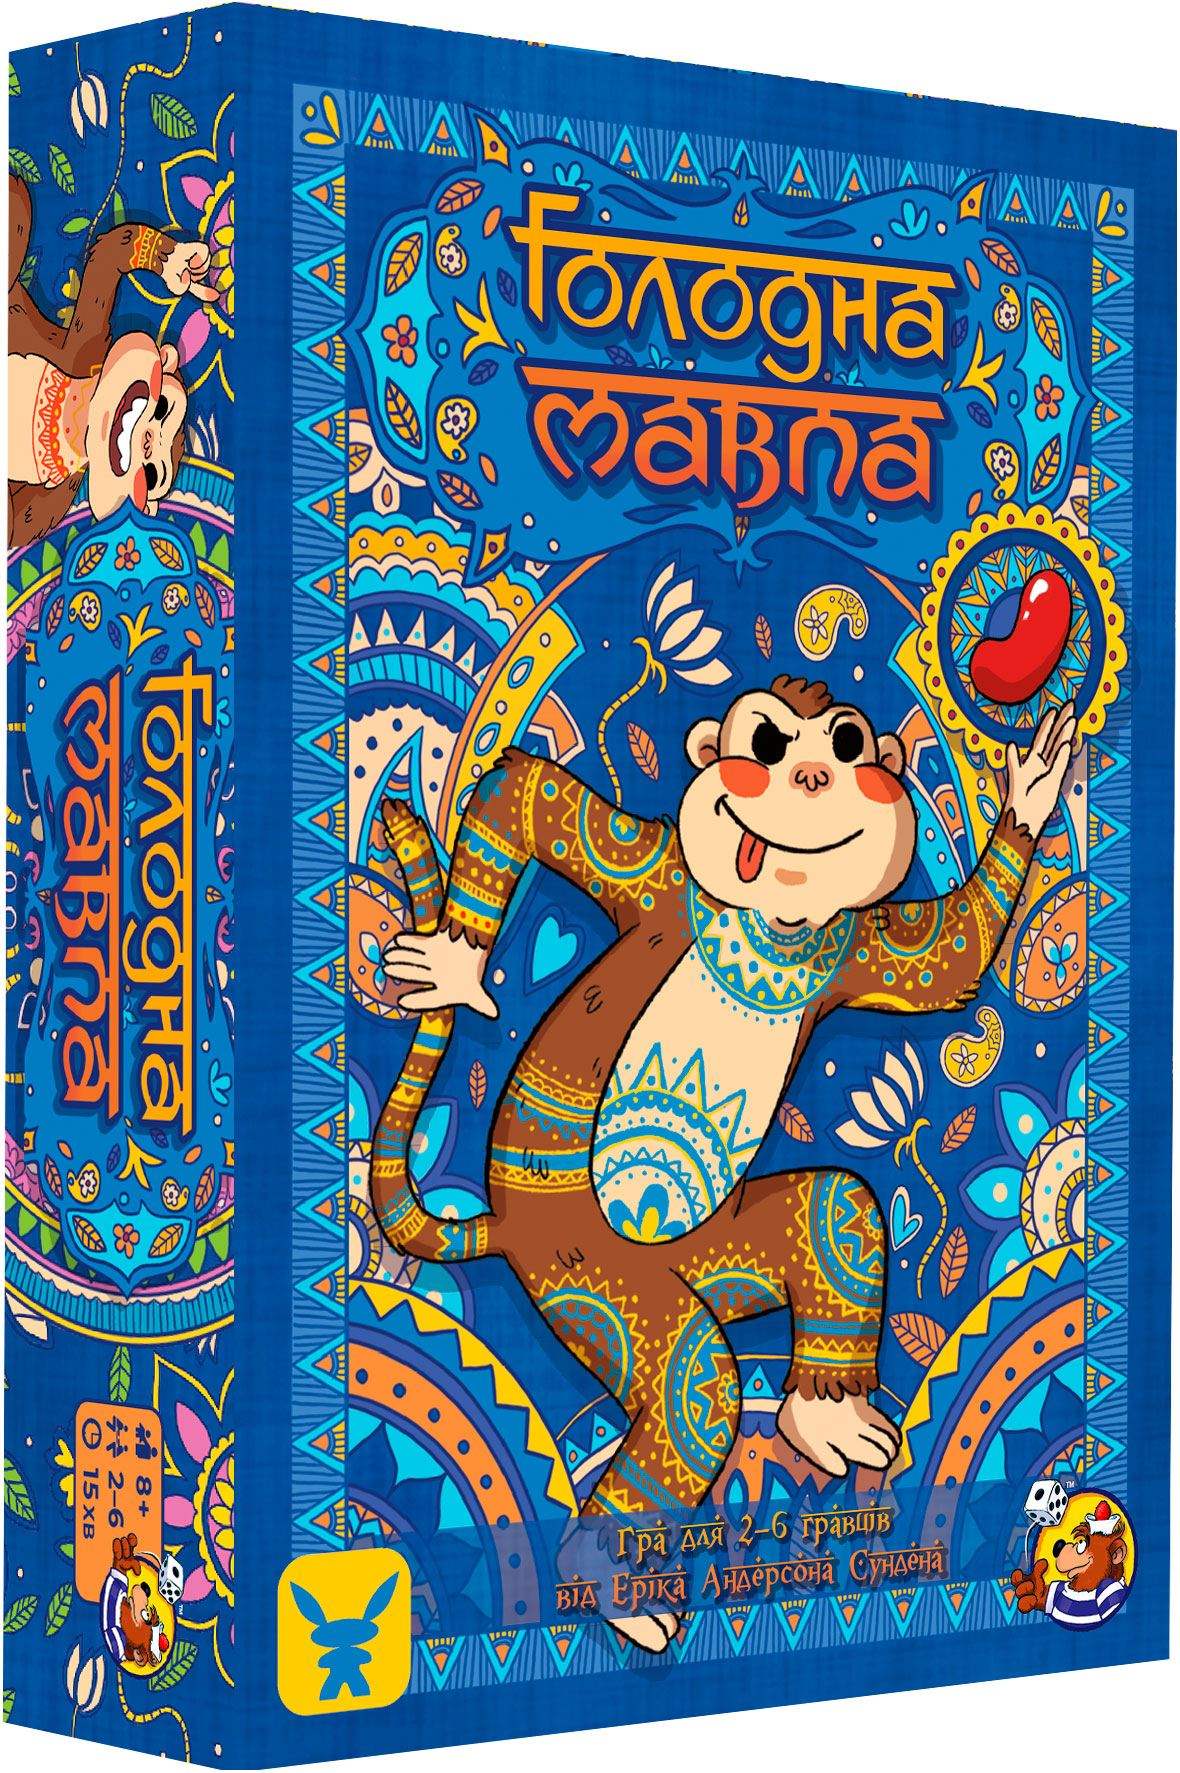 Настільна гра Голодна мавпа (Hungry Monkey), бренду Geekach Games, для 2-6 гравців, час гри < 30хв. - KUBIX